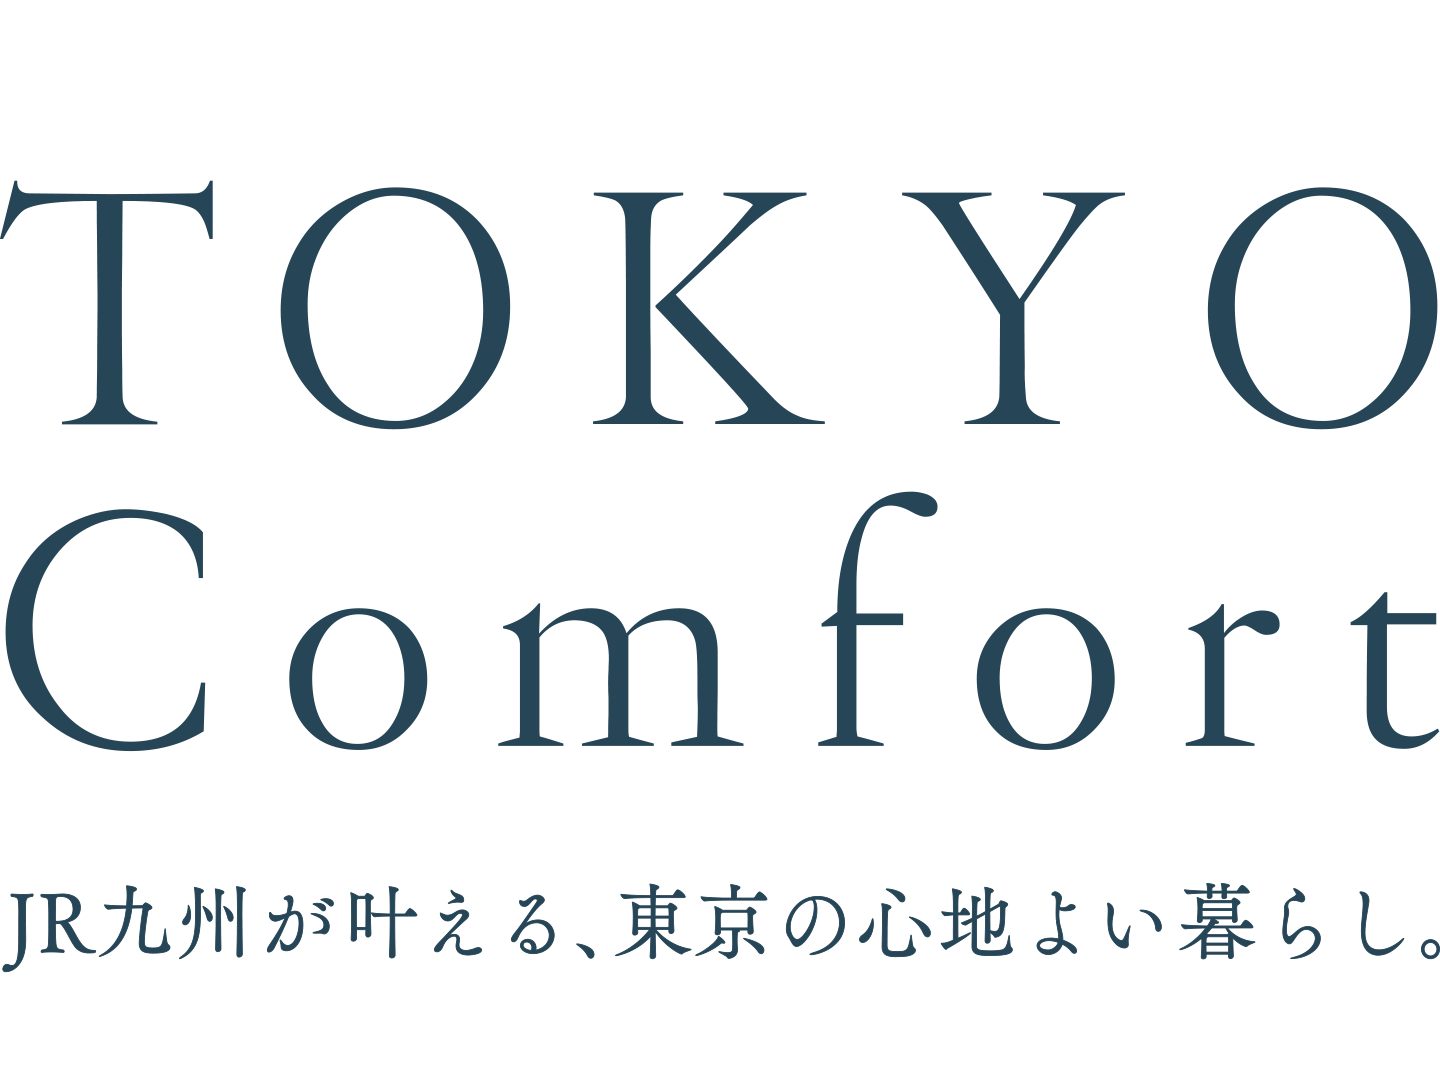 TOKYO Comfort